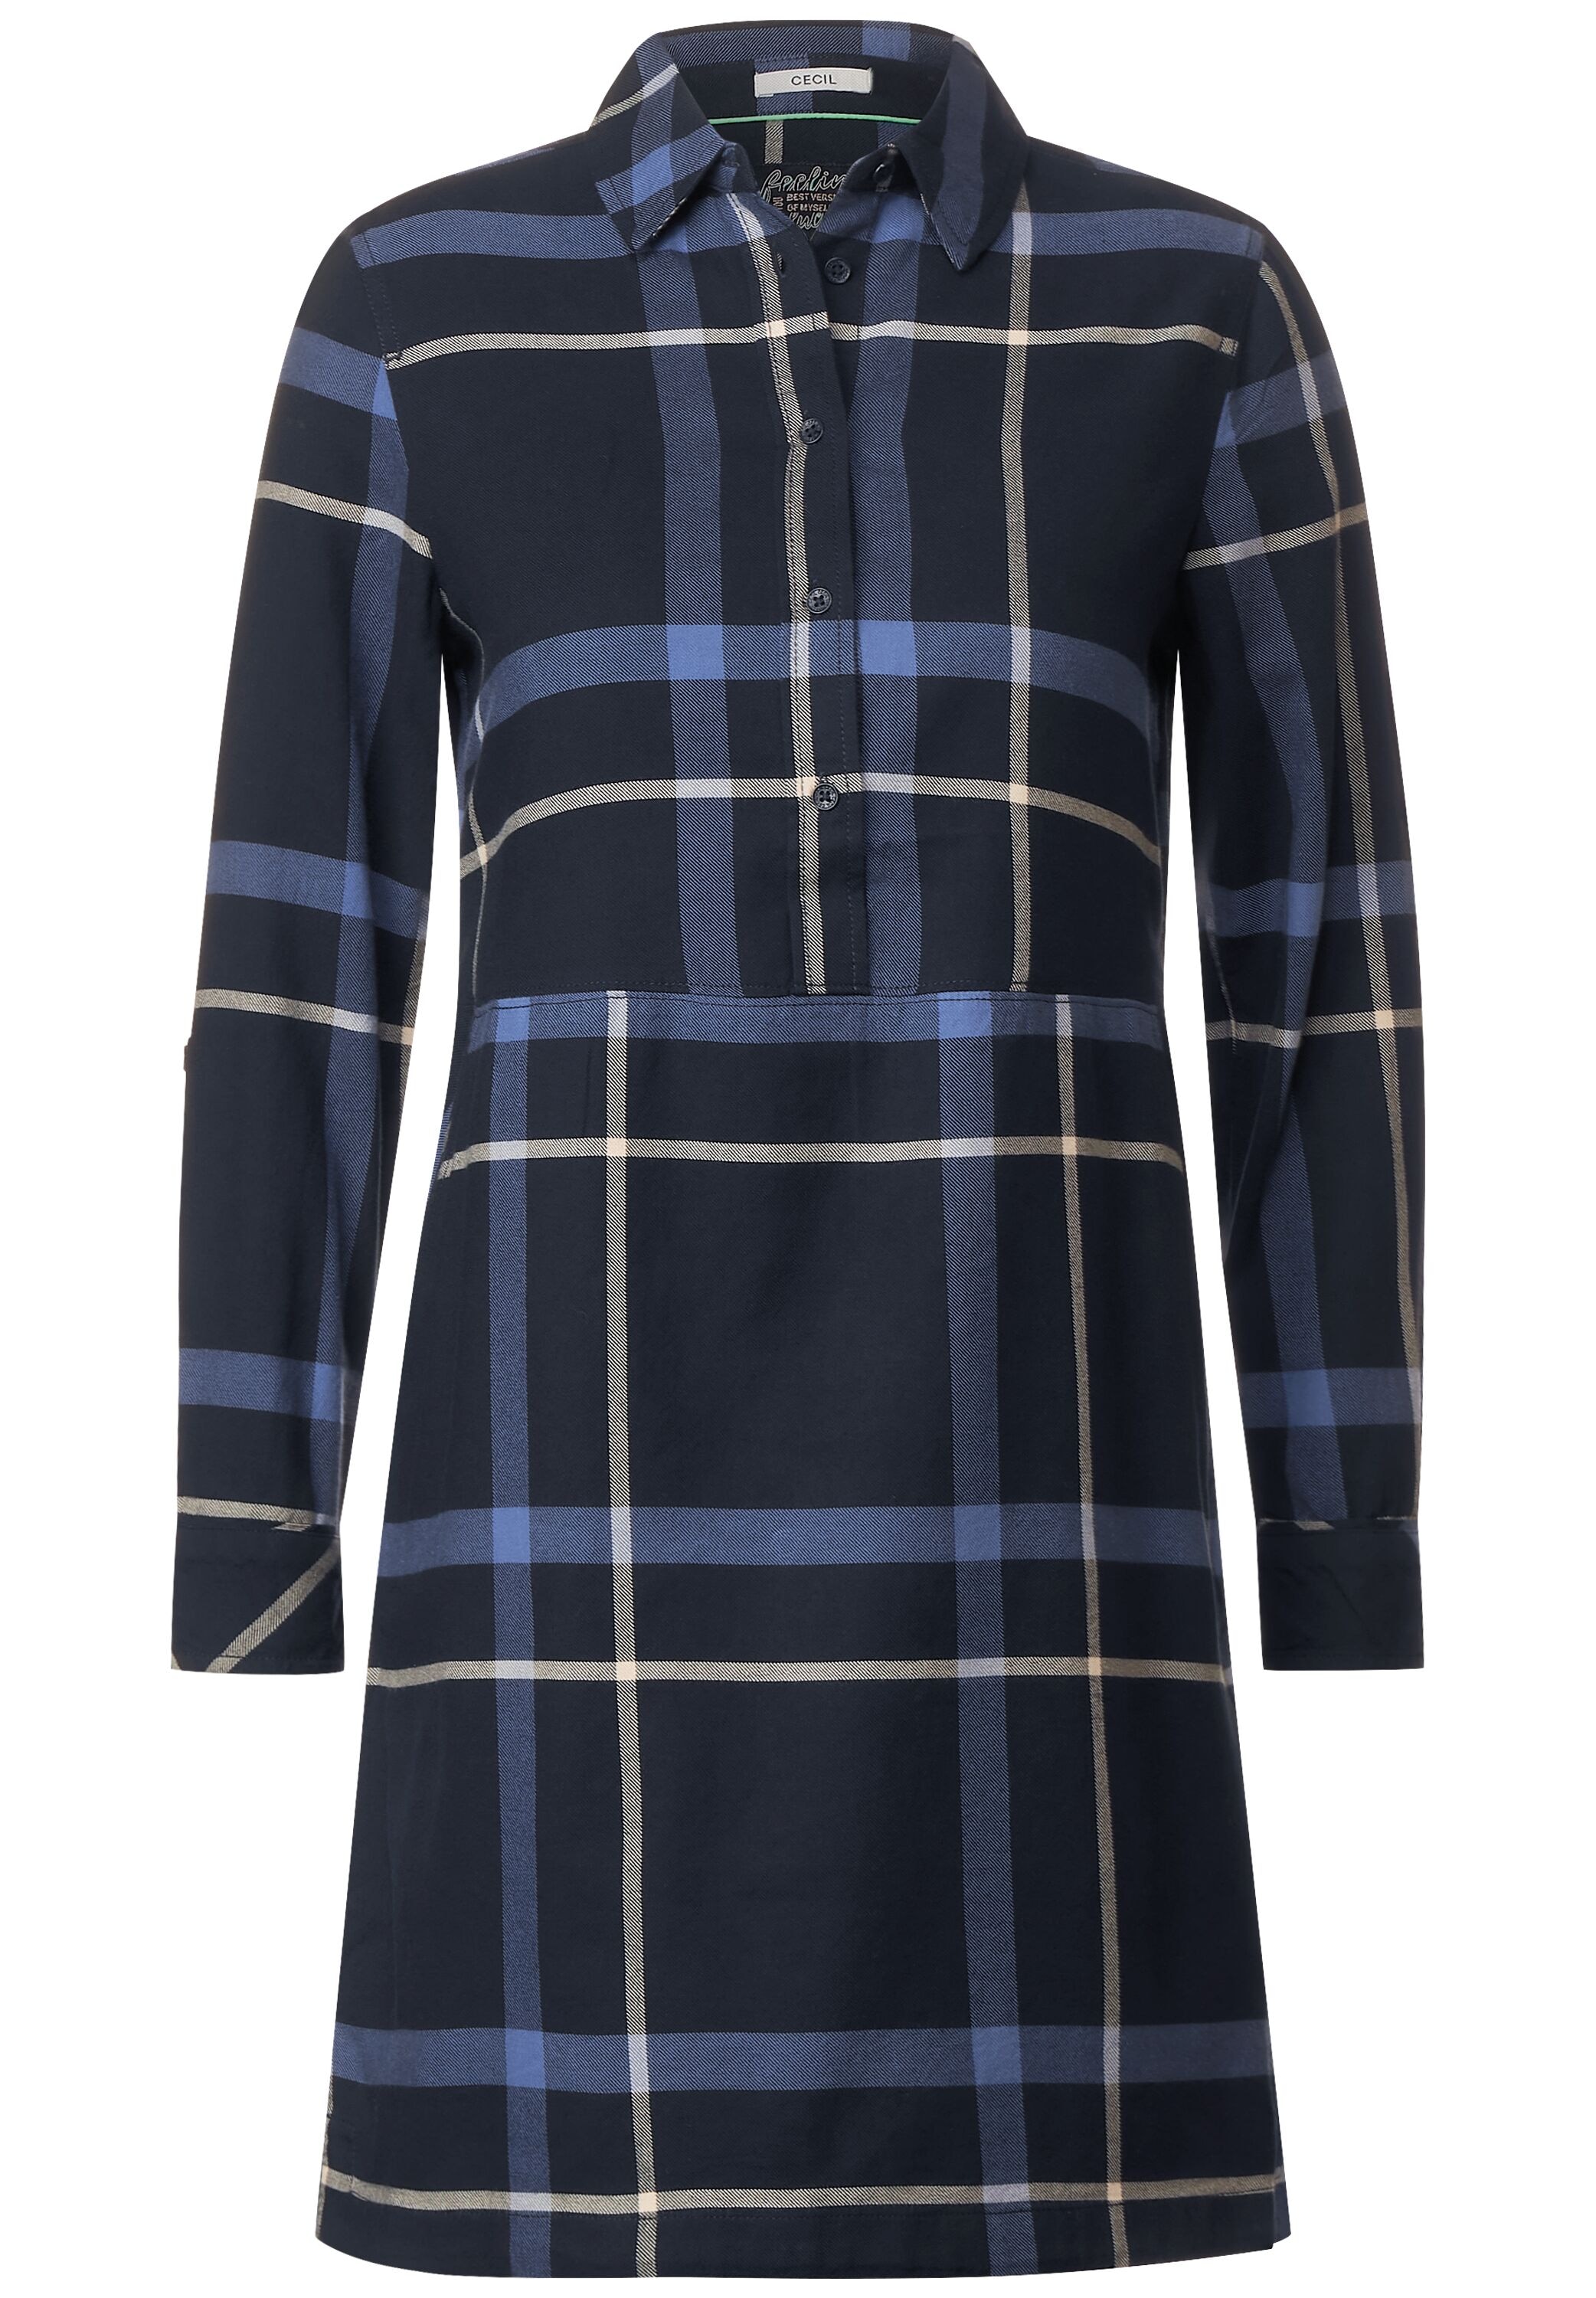 Blusenkleid kaufen »Flannel Dress« online Cecil Check